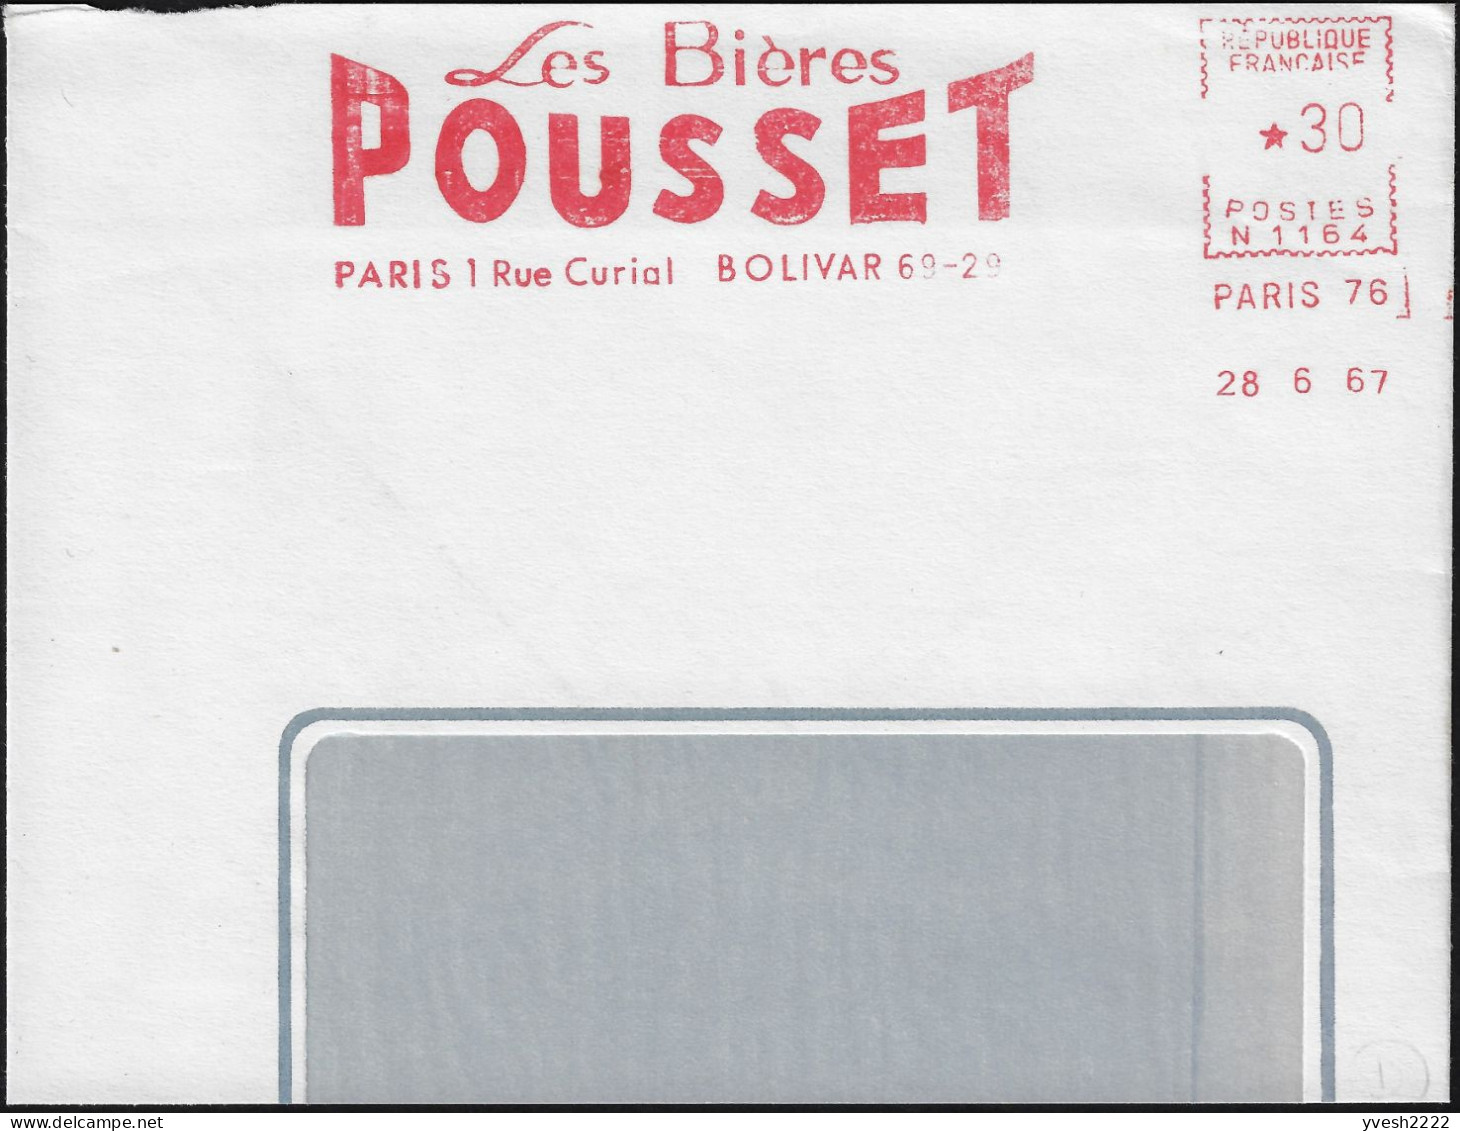 France 1967. Empreinte De Machine à Affranchir, EMA. Les Bières Pousset, Paris 1. Bolivar 69-29 - Bières